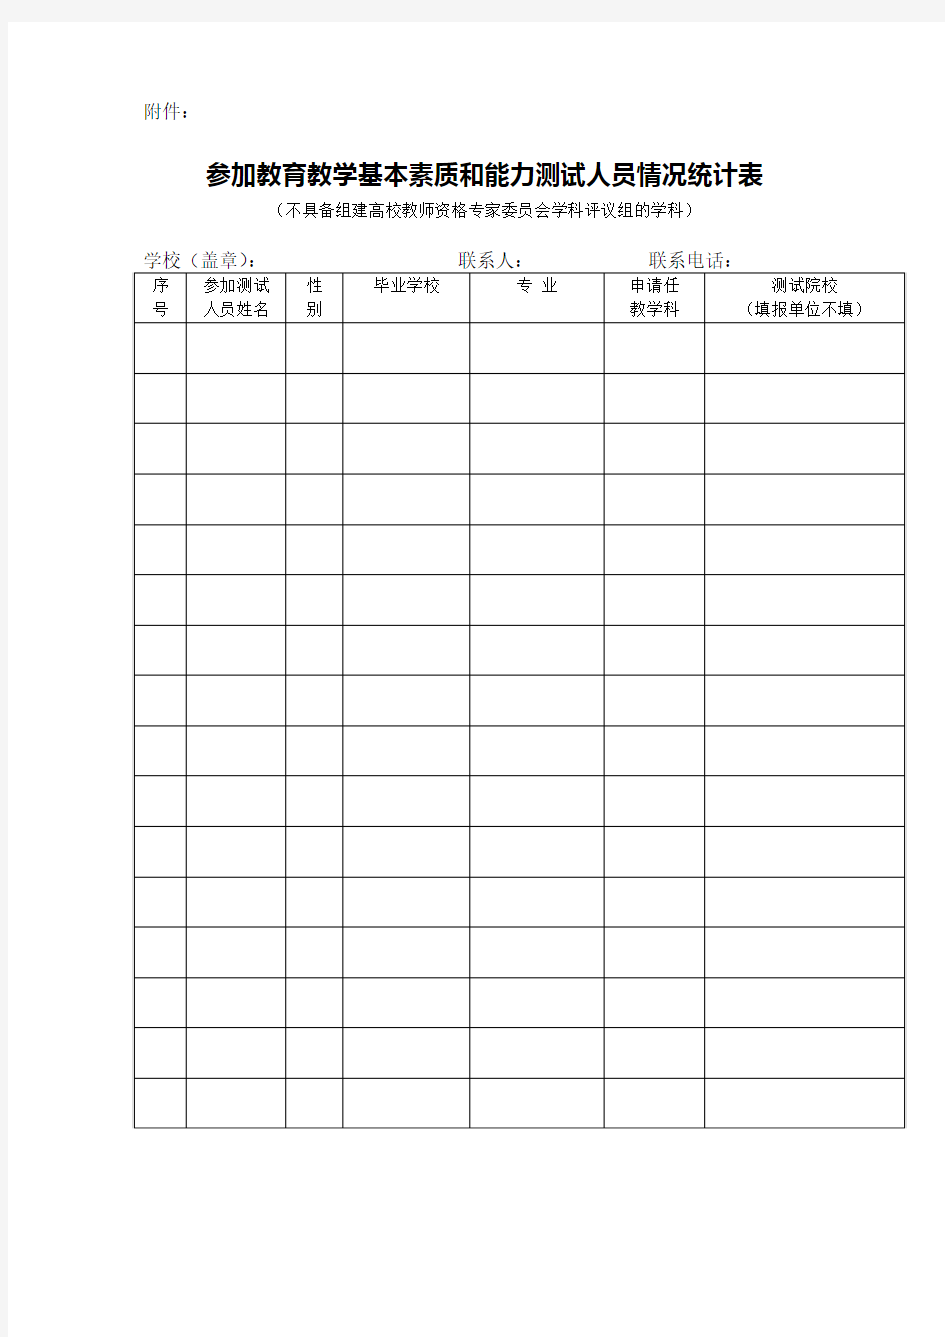 四川省教育教学基本素质和能力测试人员情况统计表(2017)